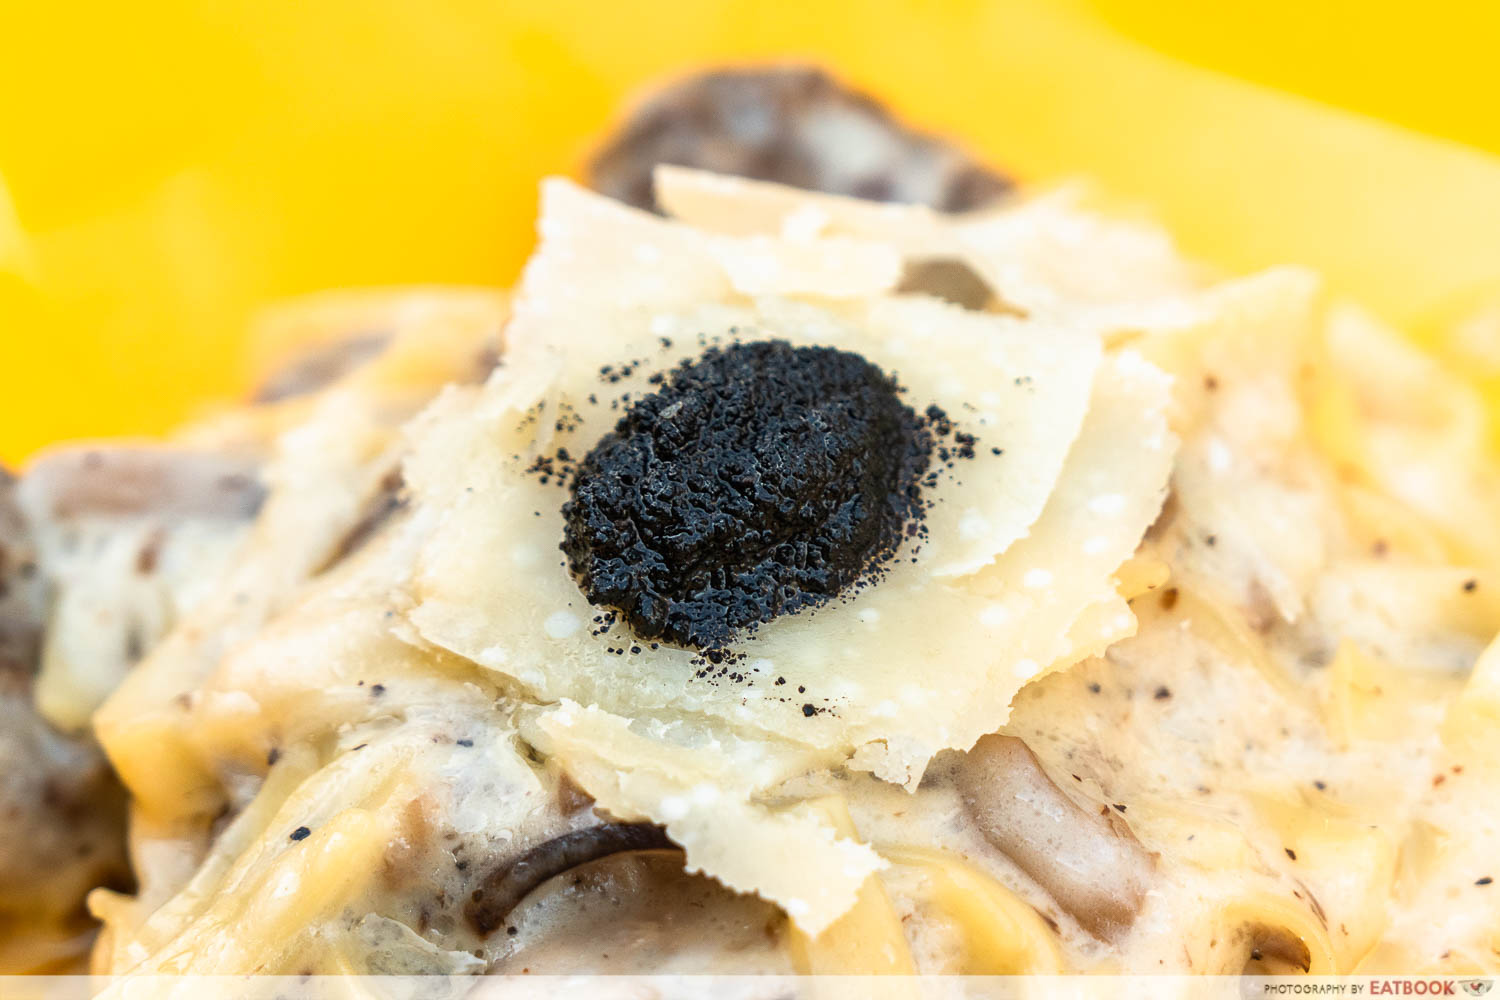 saporita truffle cheesewheel pasta close up shot